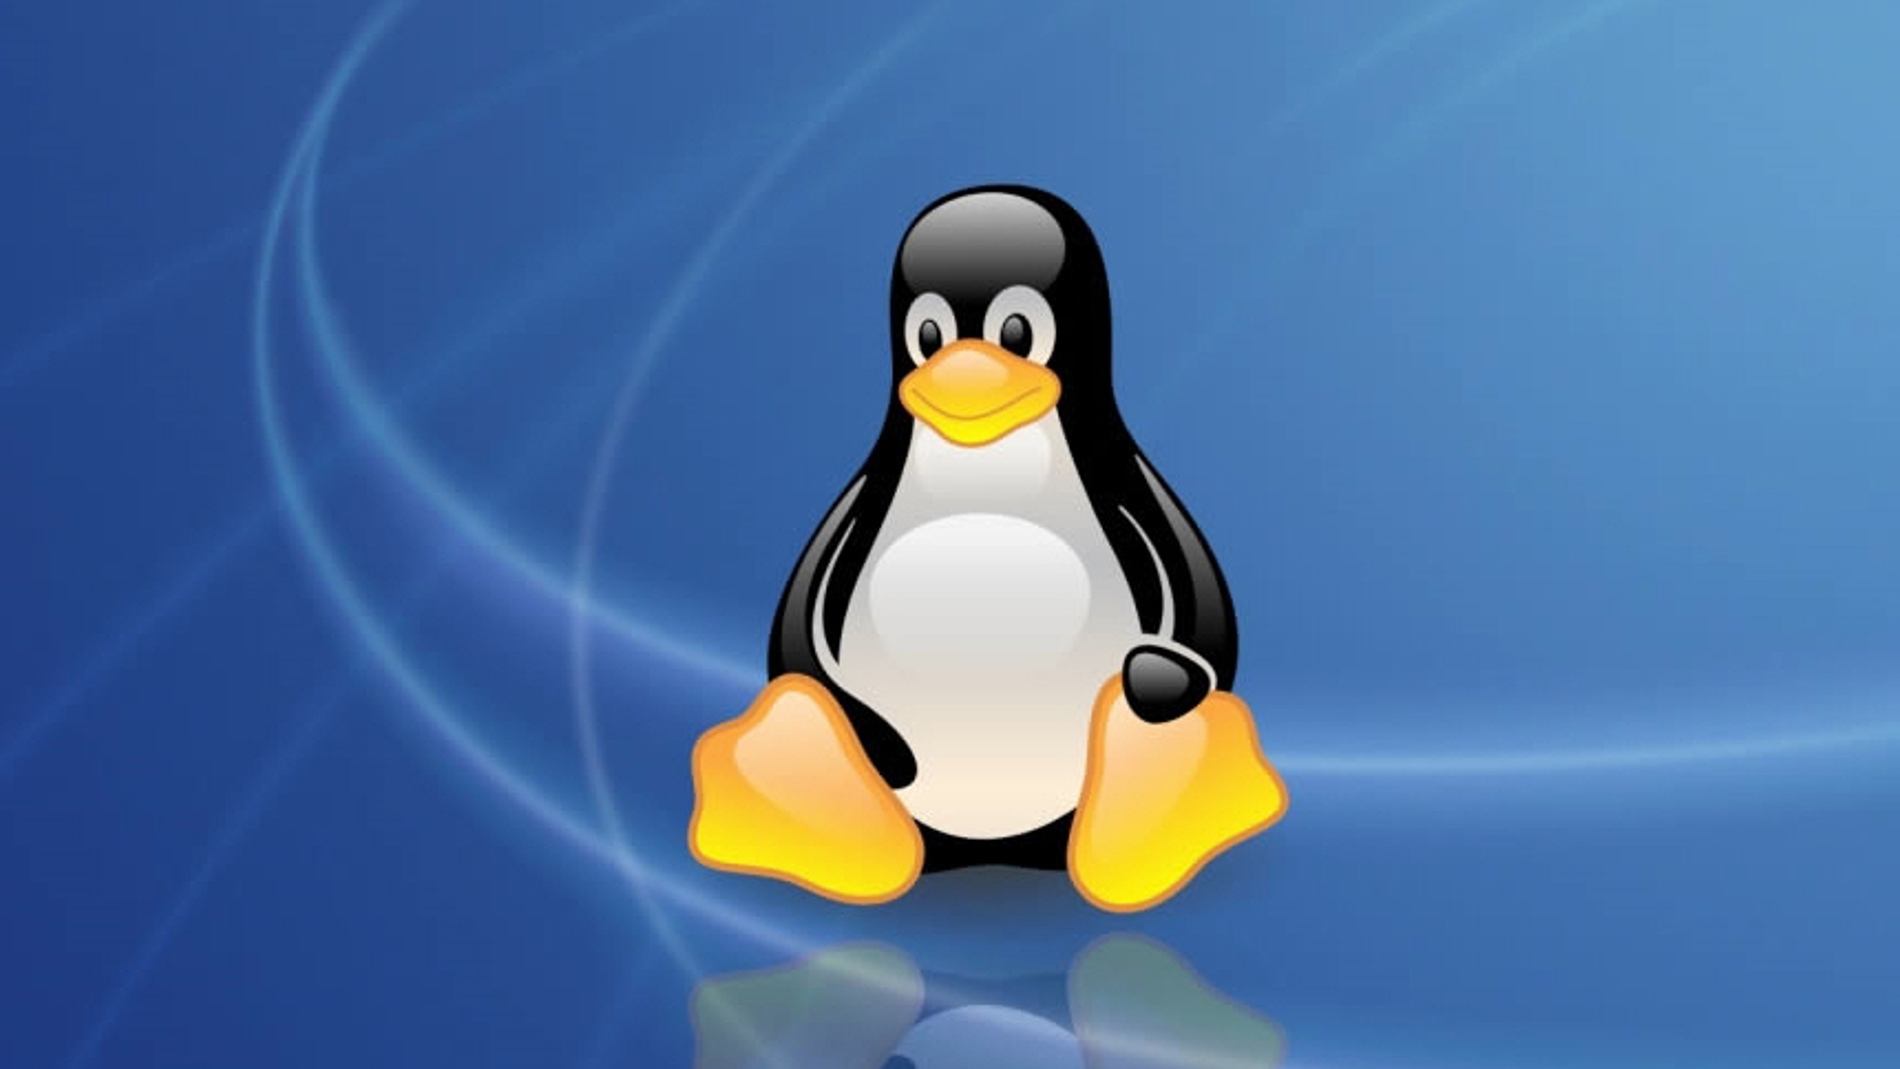 El sistema operativo Linux comenzará a utilizar lenguaje inclusivo